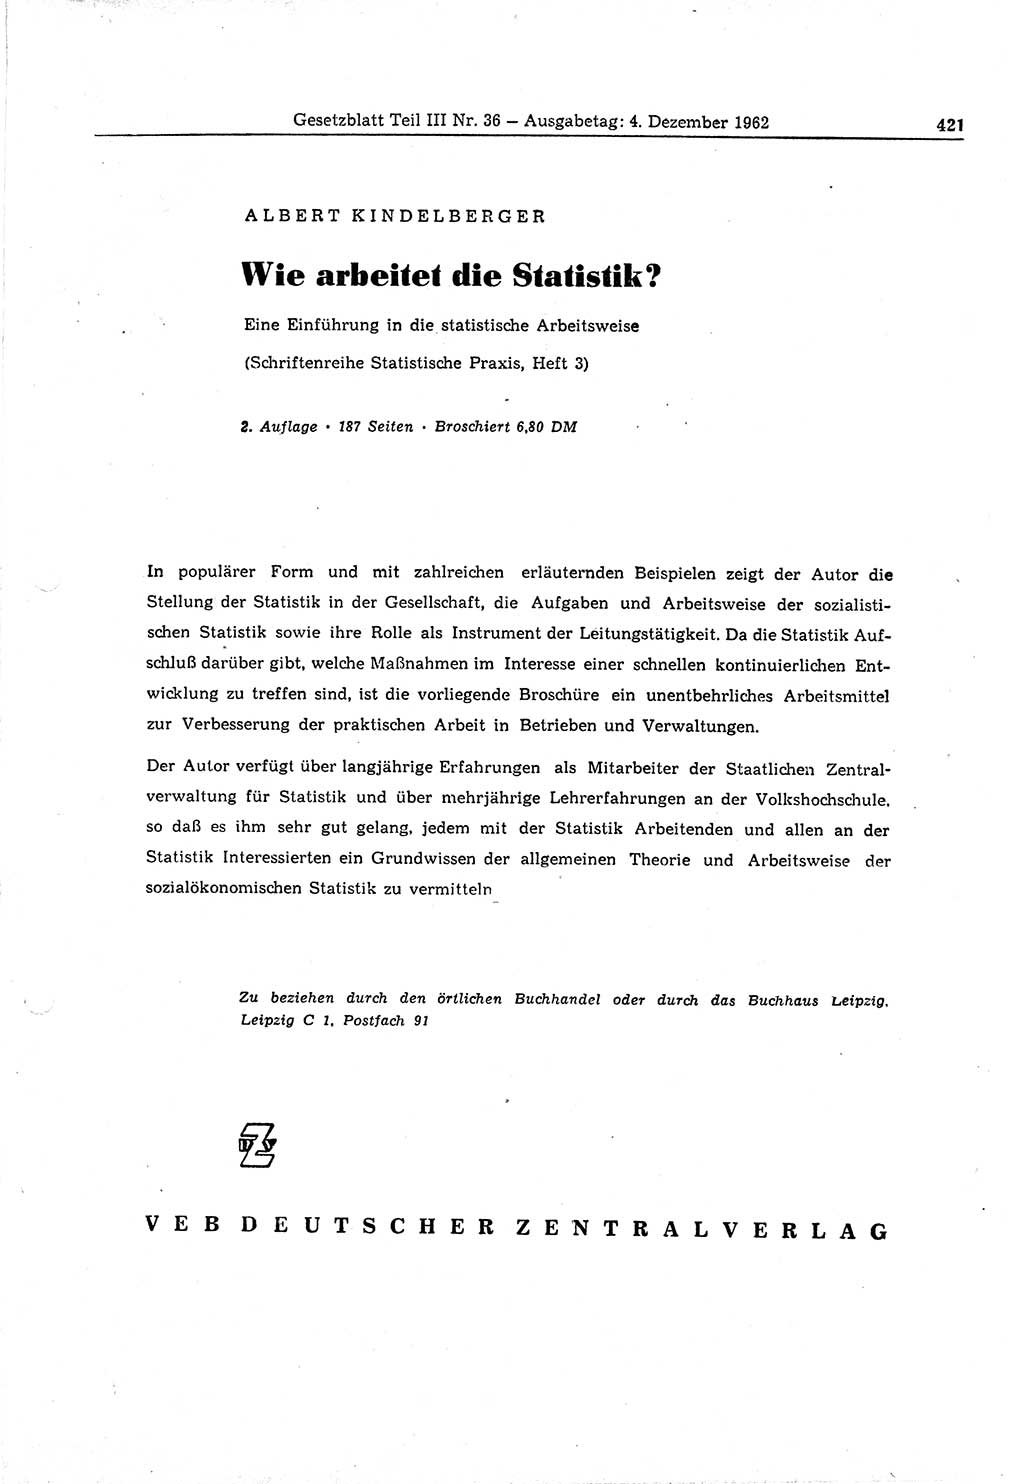 Gesetzblatt (GBl.) der Deutschen Demokratischen Republik (DDR) Teil ⅠⅠⅠ 1962, Seite 421 (GBl. DDR ⅠⅠⅠ 1962, S. 421)